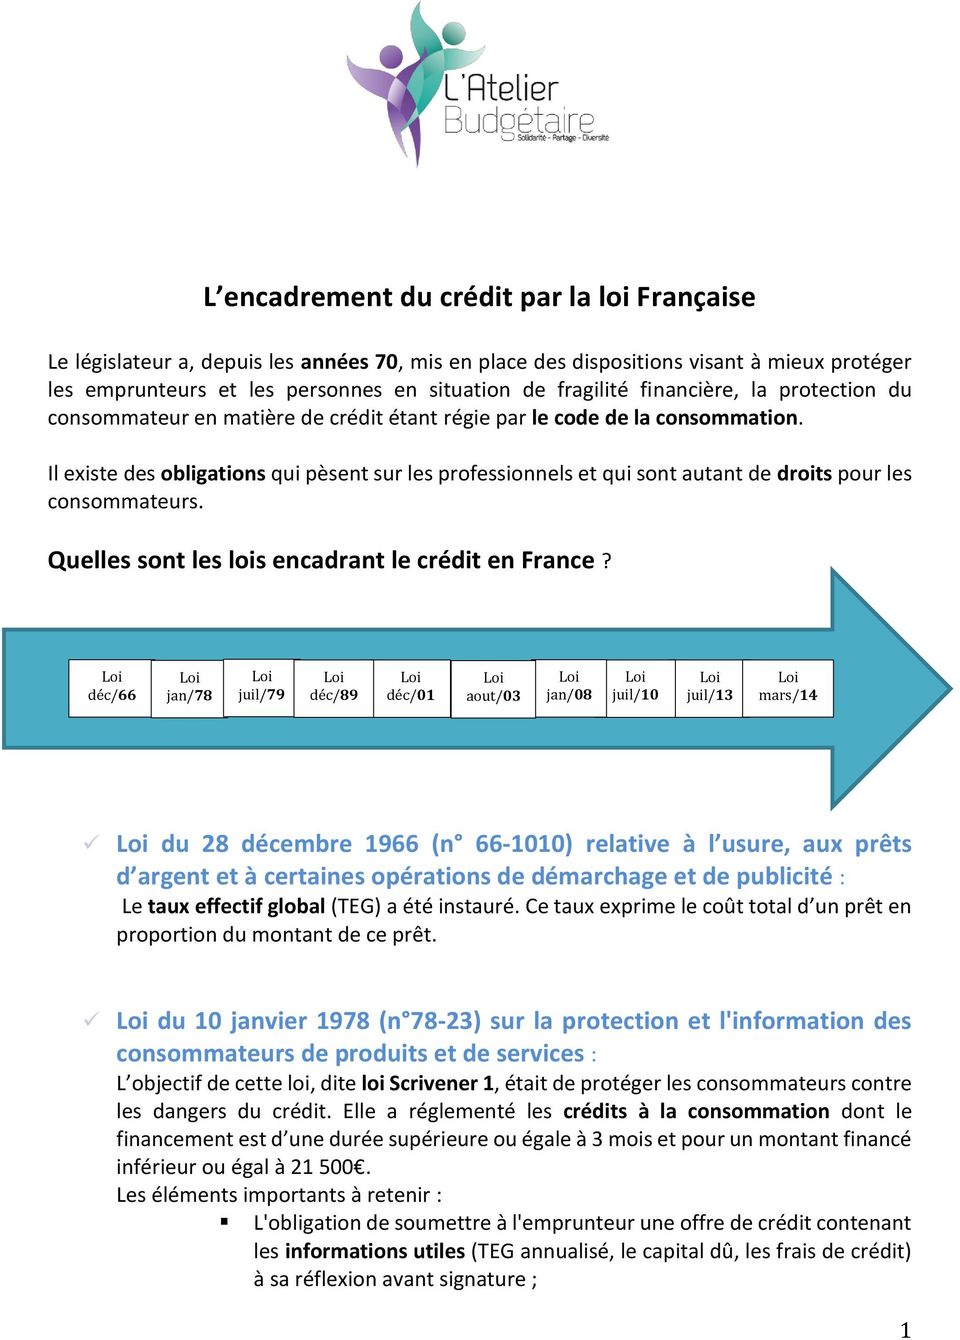 Il existe des obligations qui pèsent sur les professionnels et qui sont autant de droits pour les consommateurs. Quelles sont les lois encadrant le crédit en France?